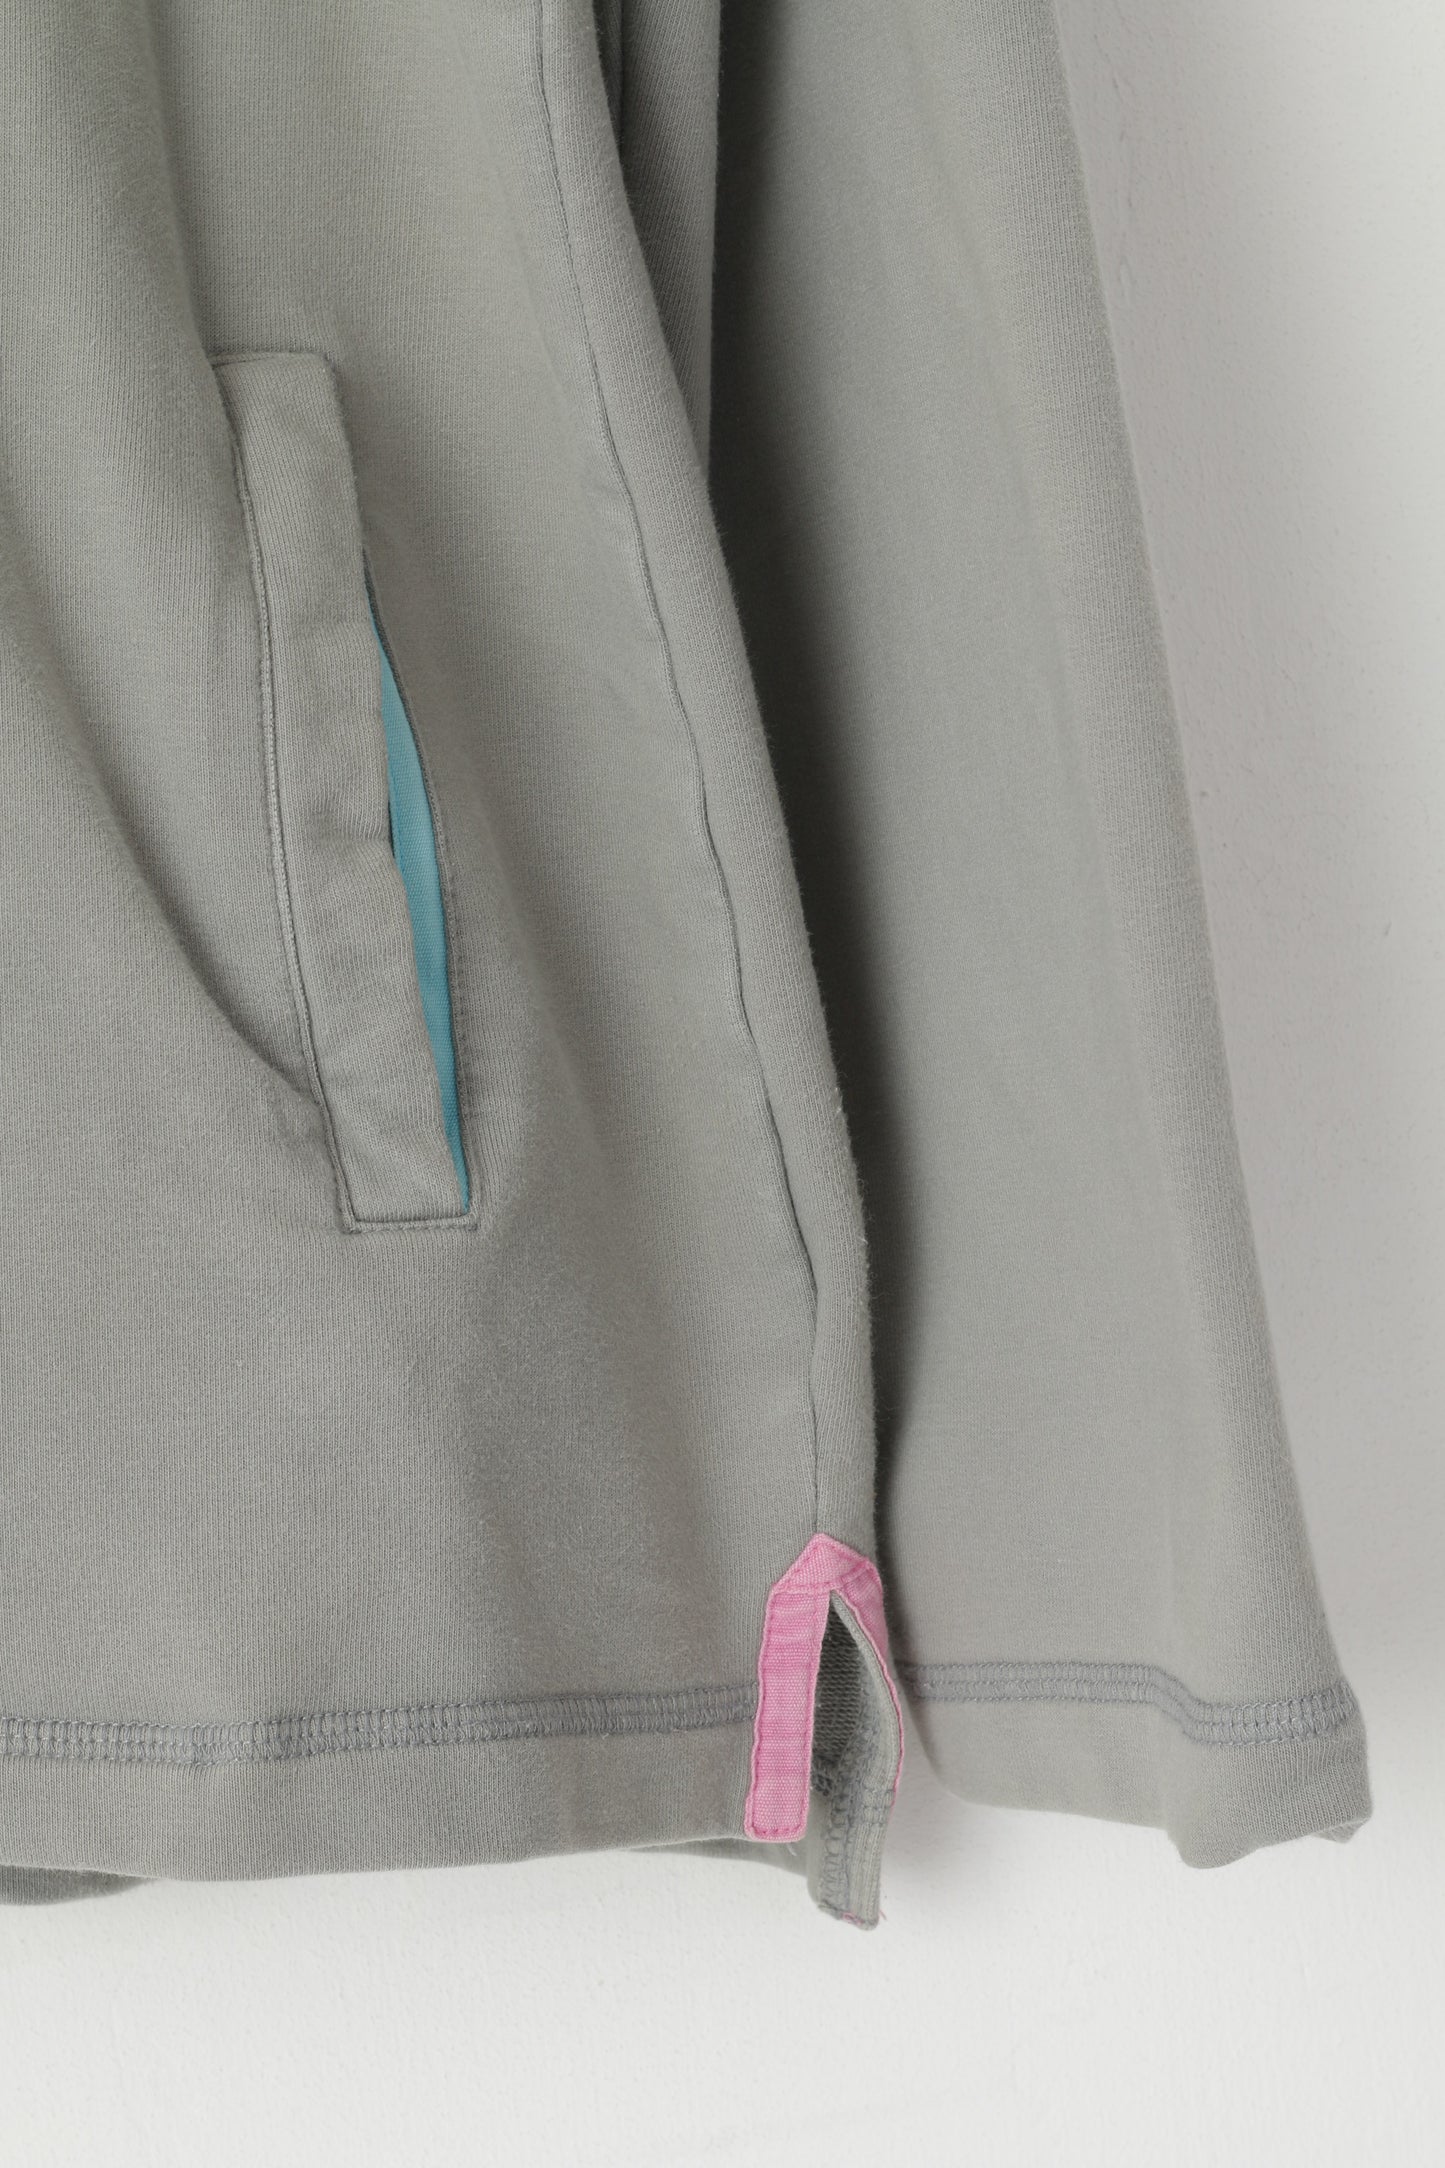 Joules Women L Sweatshirt Grey Cotton Zip Neck Pockets #3 Pullover Top